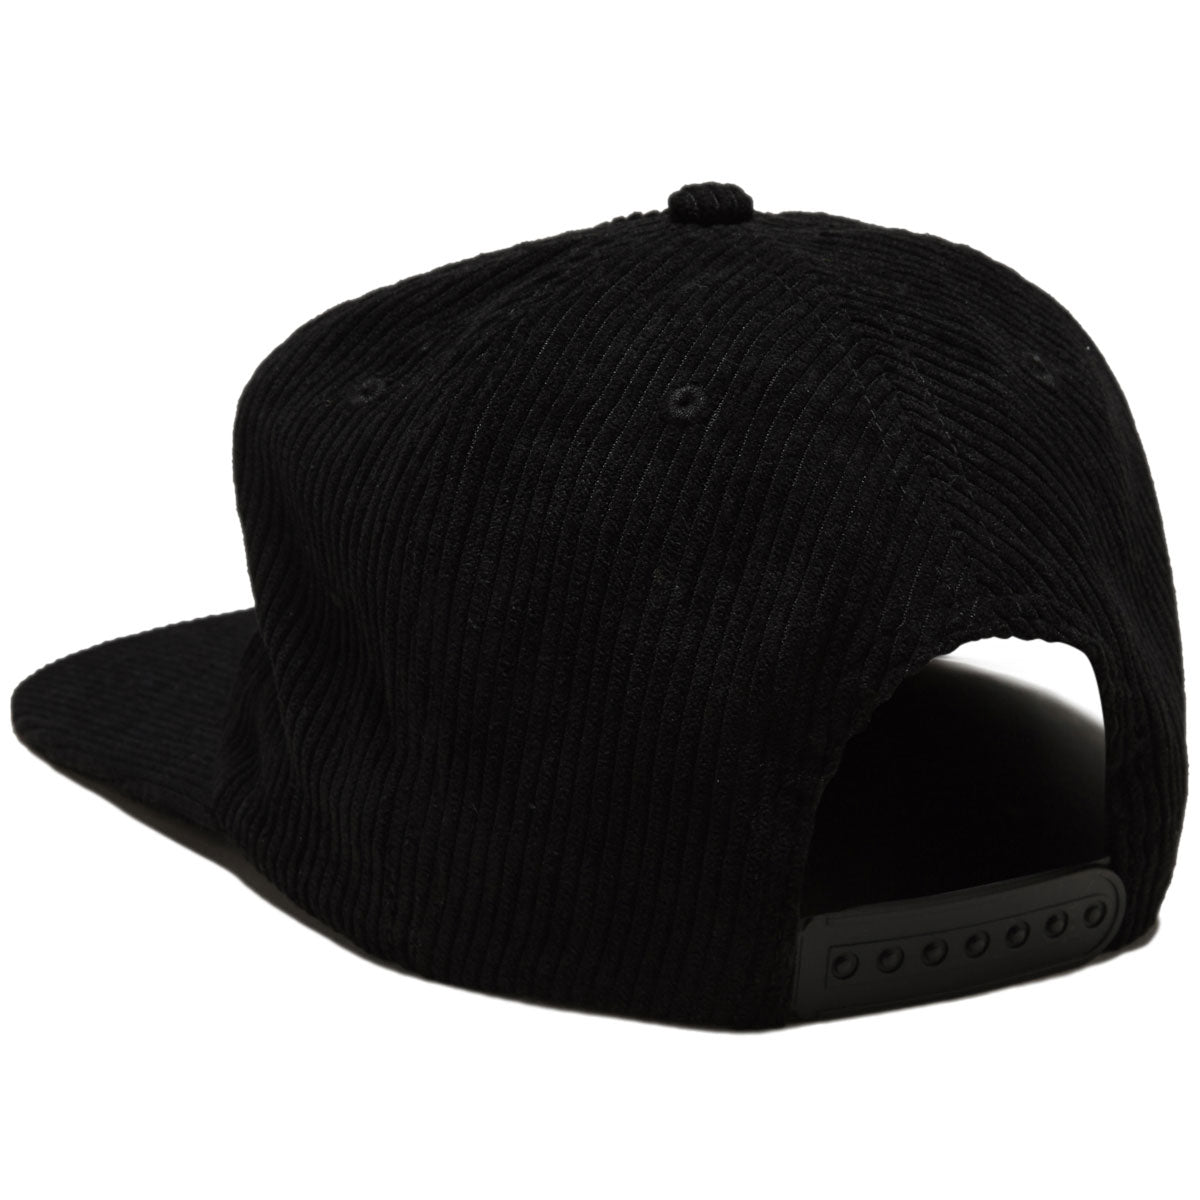 Baker Olde Cord Snapback Hat - Black/Grey image 2